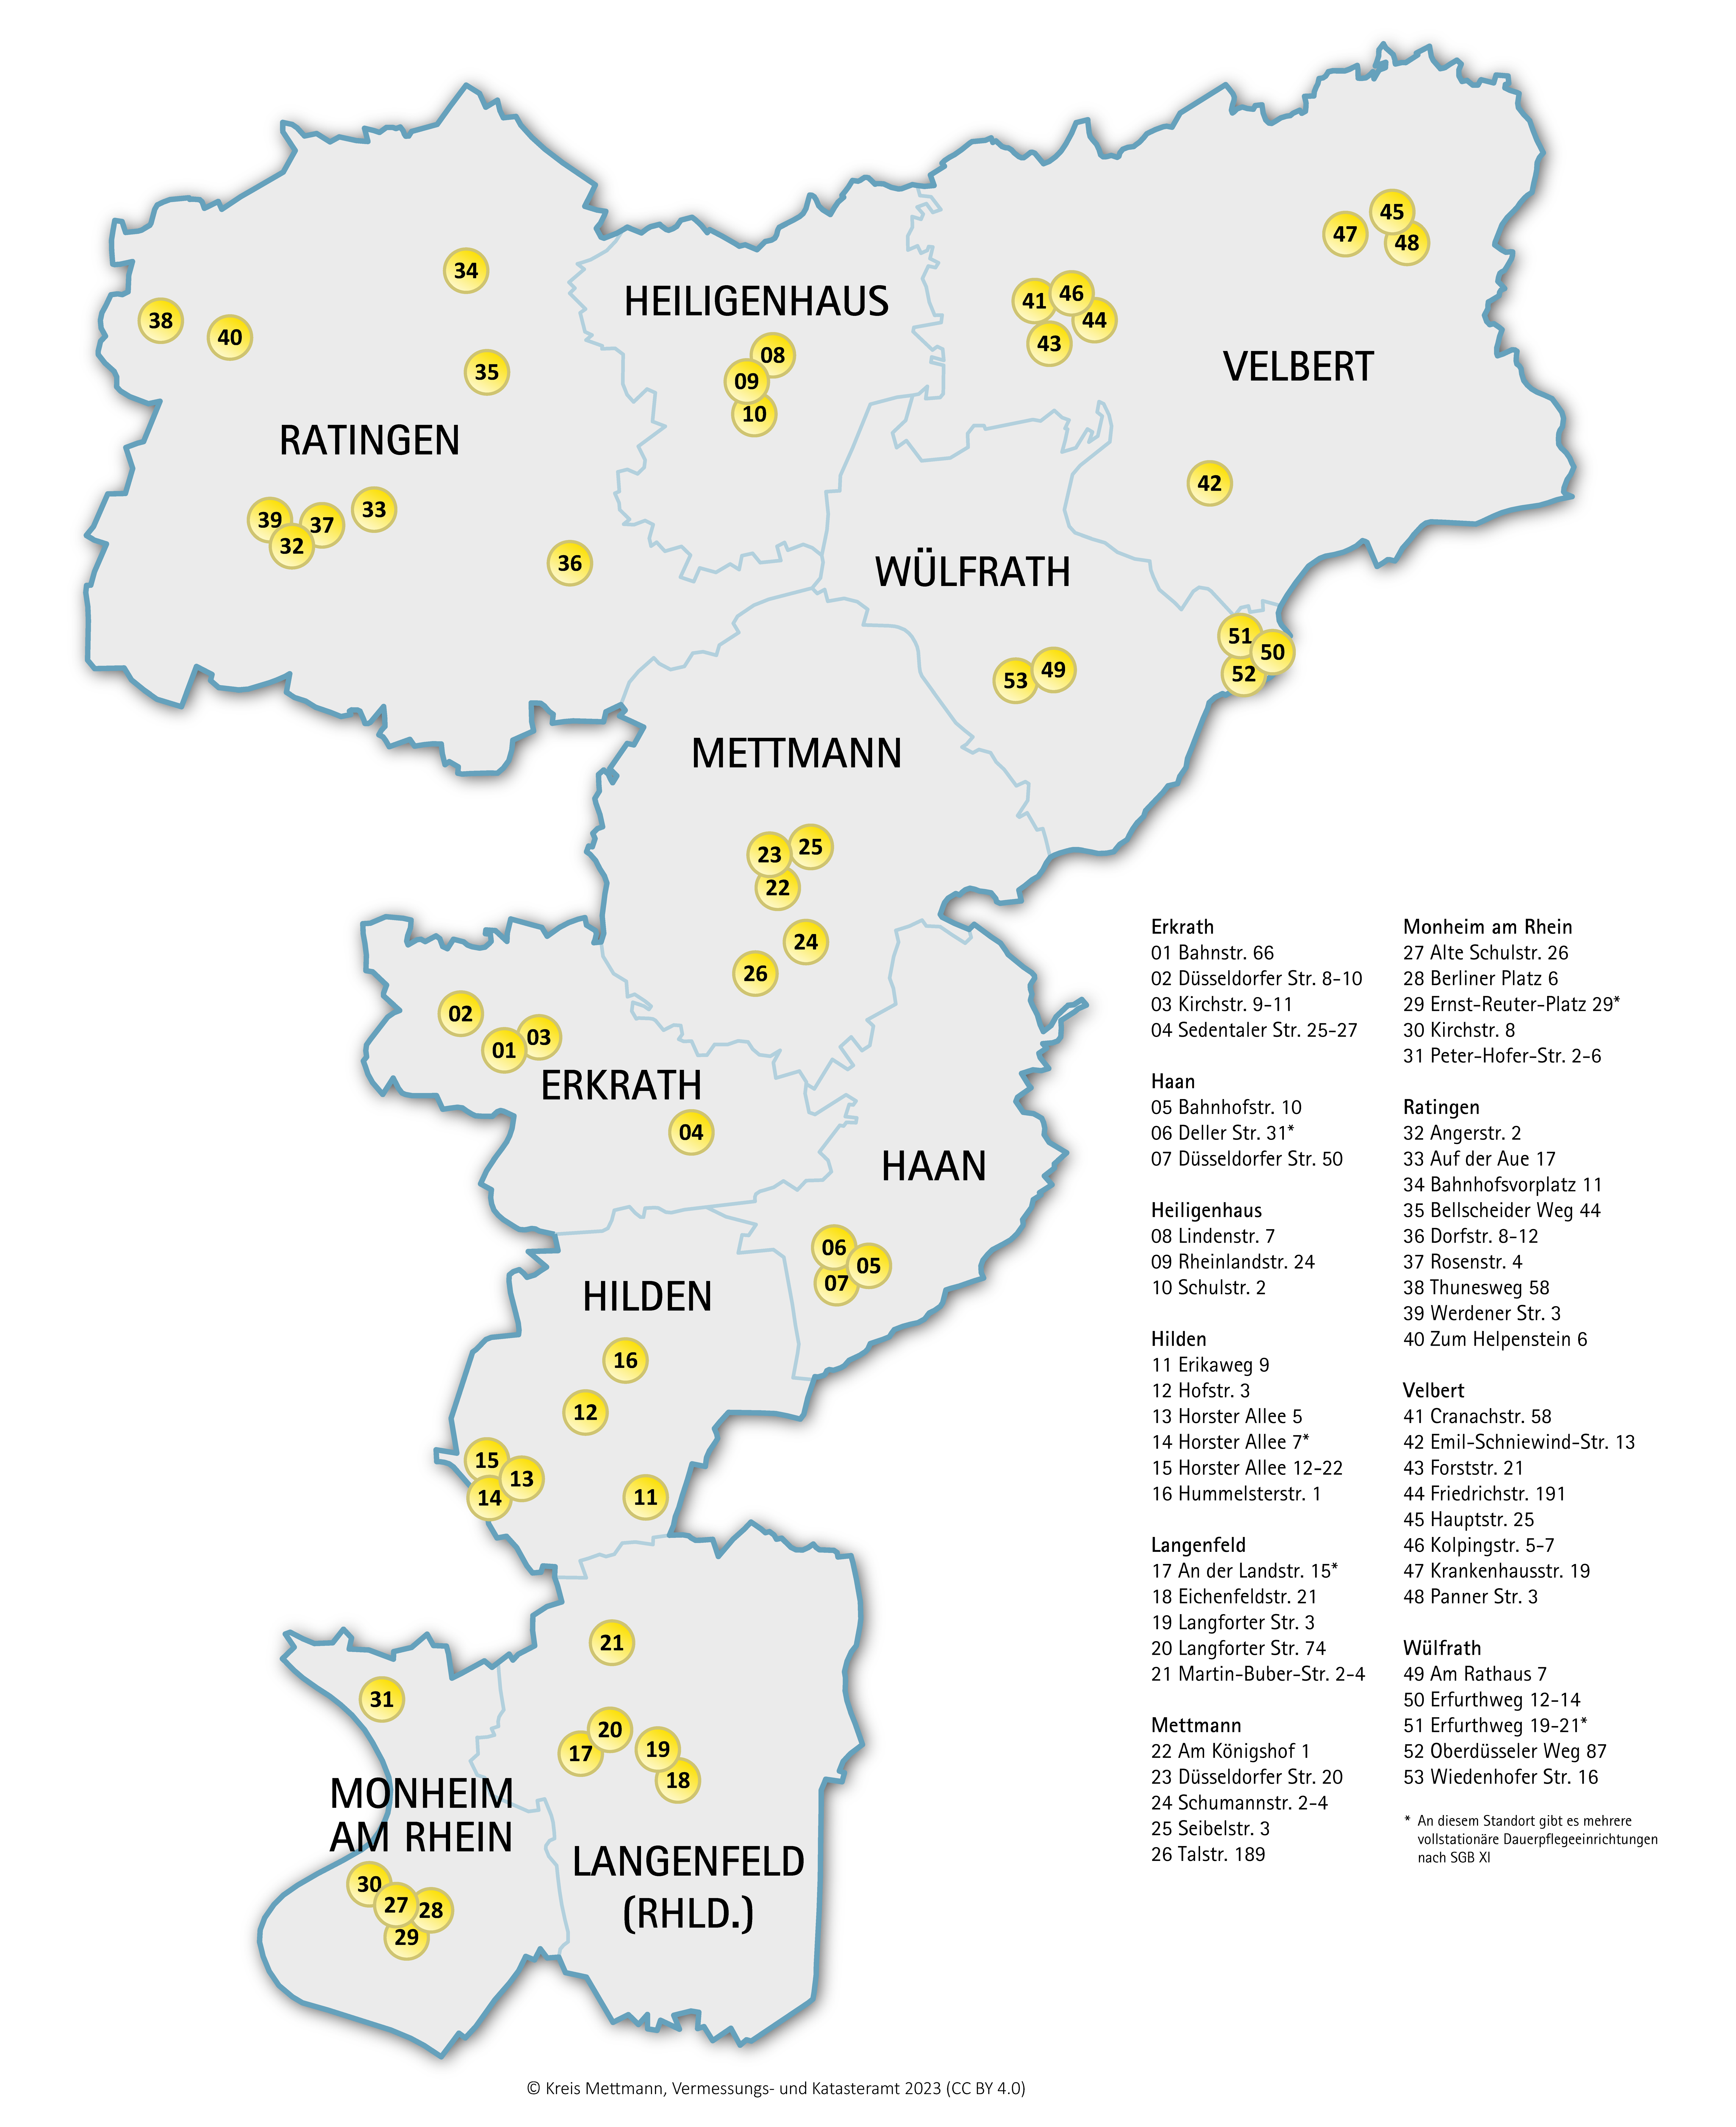 Bild vergrößern: Übersichtskarte der Angebote der vollstationären Pflege im Kreis Mettmann. Die Standorte werden durch einen Punkt markiert.